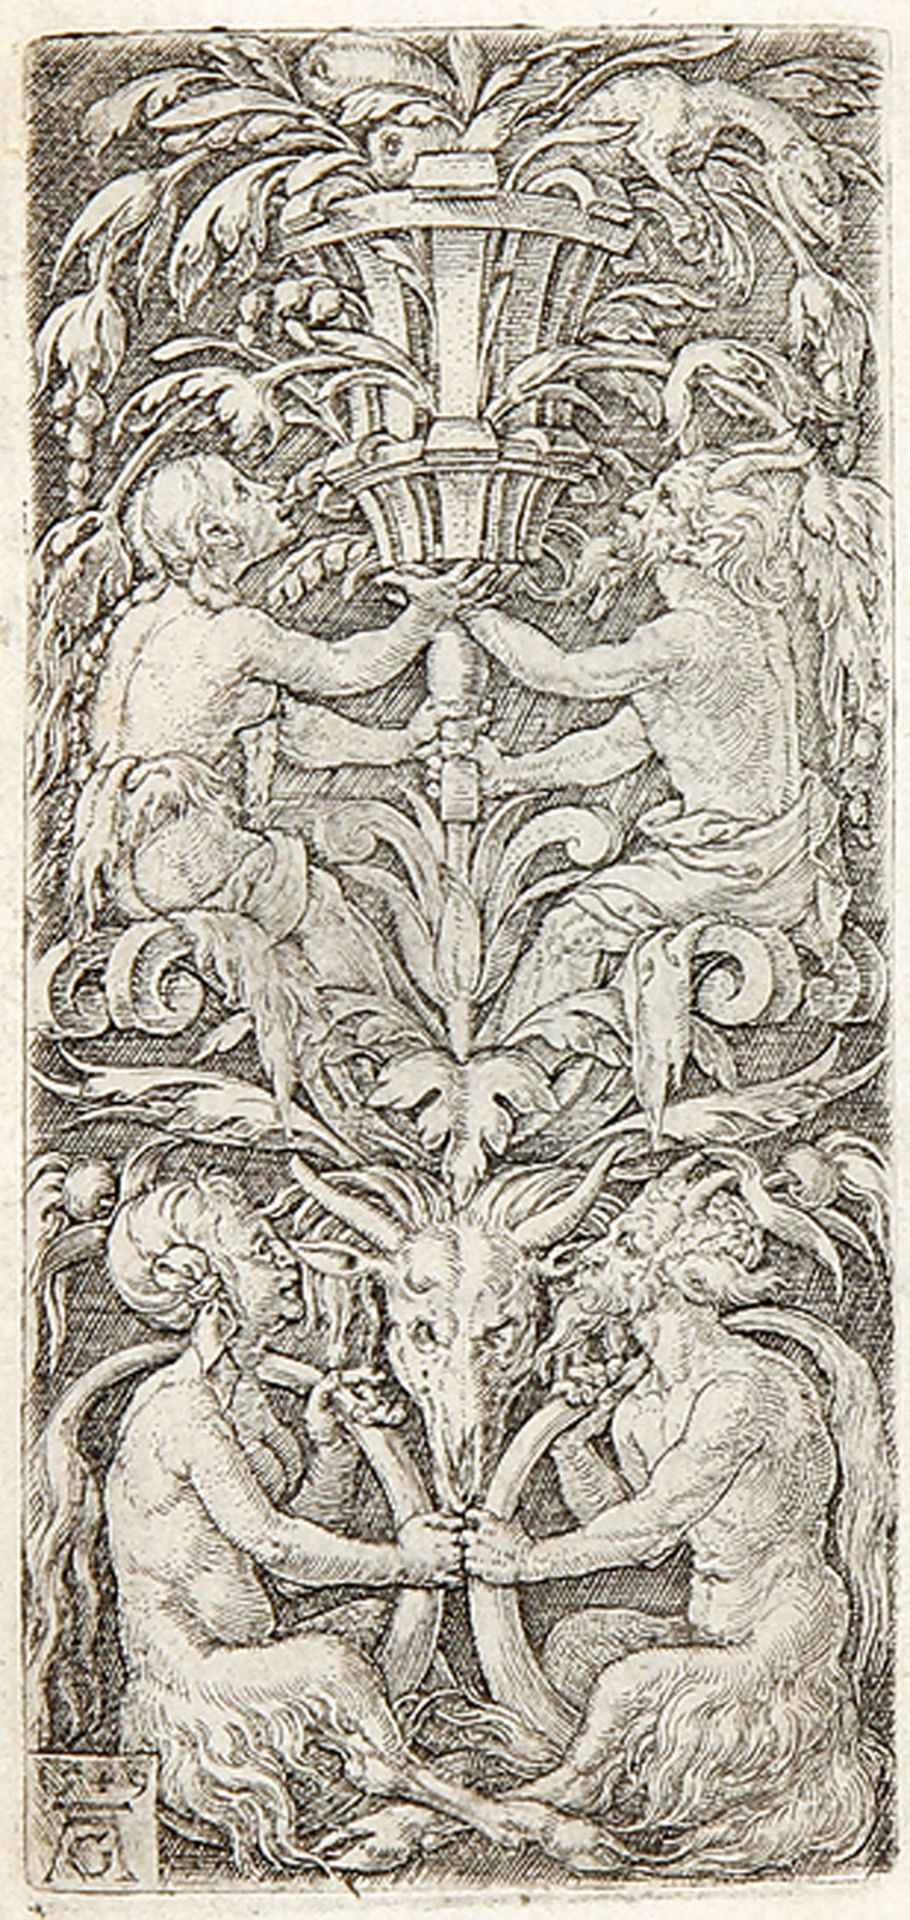 HEINRICH ALDEGREVER: Ornament mit zwei Satyrpaaren.